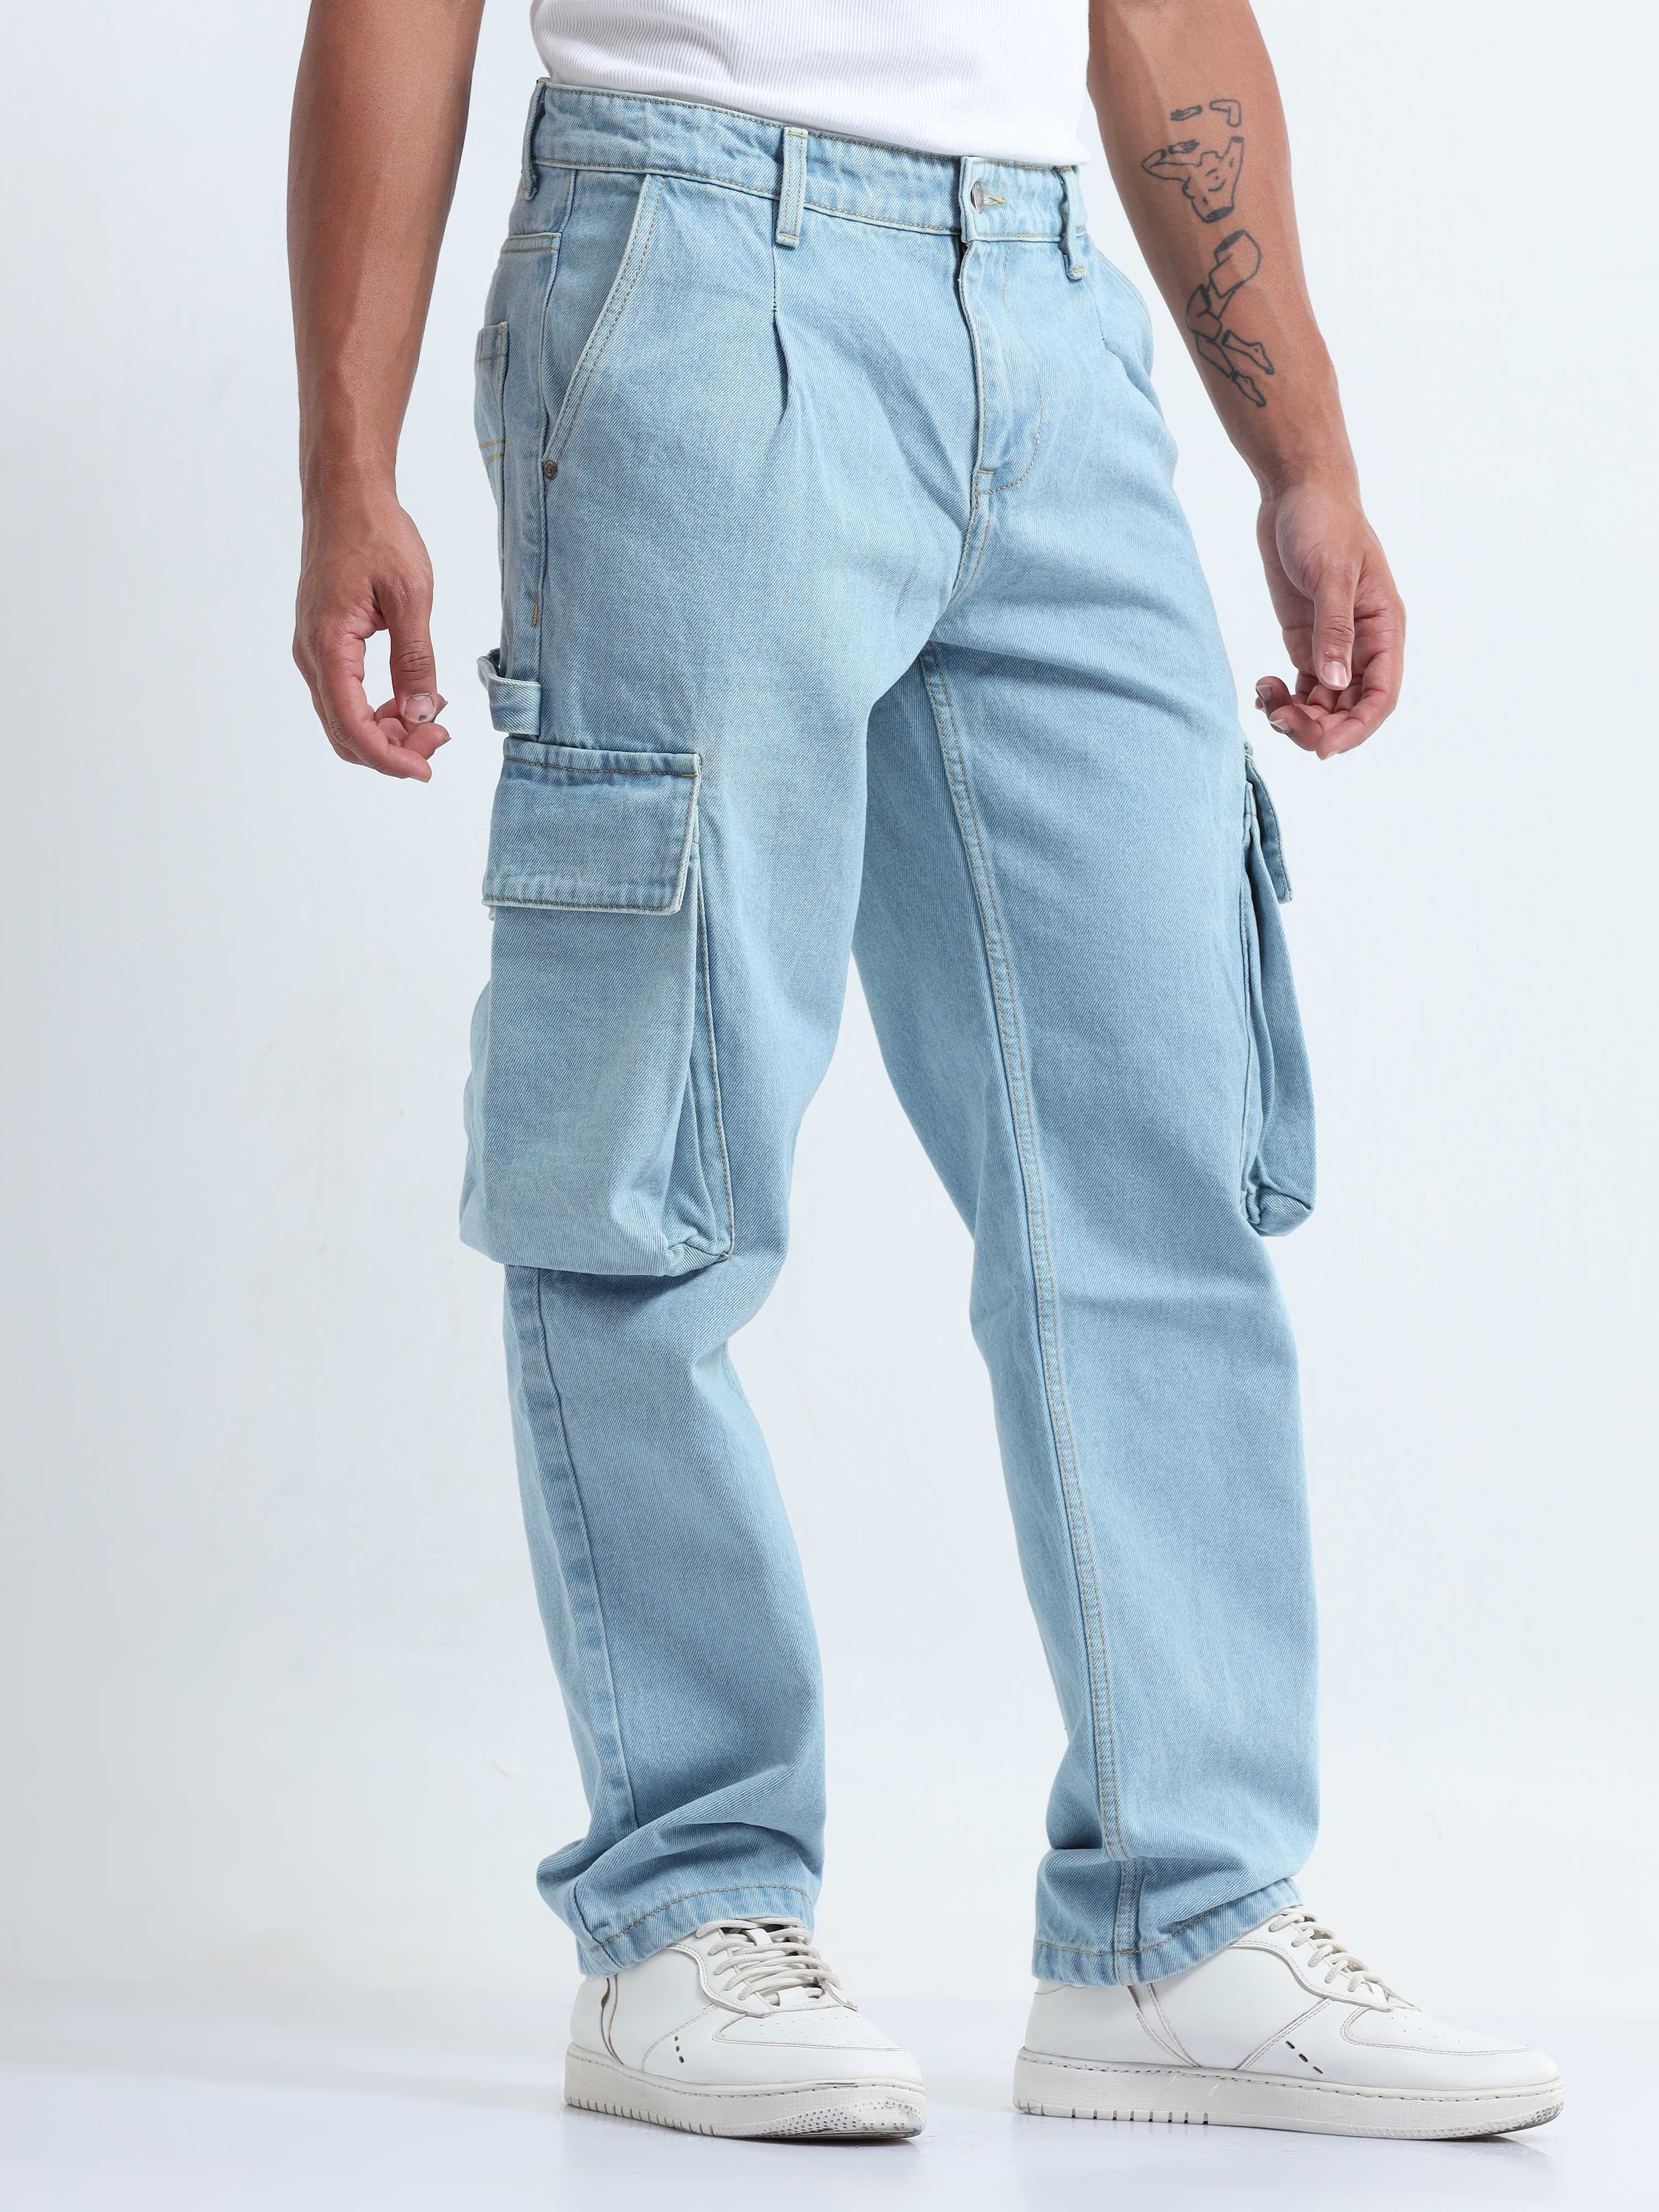 Buy Men's Blue Baggy Fit Cargo Jeans Online at Bewakoof